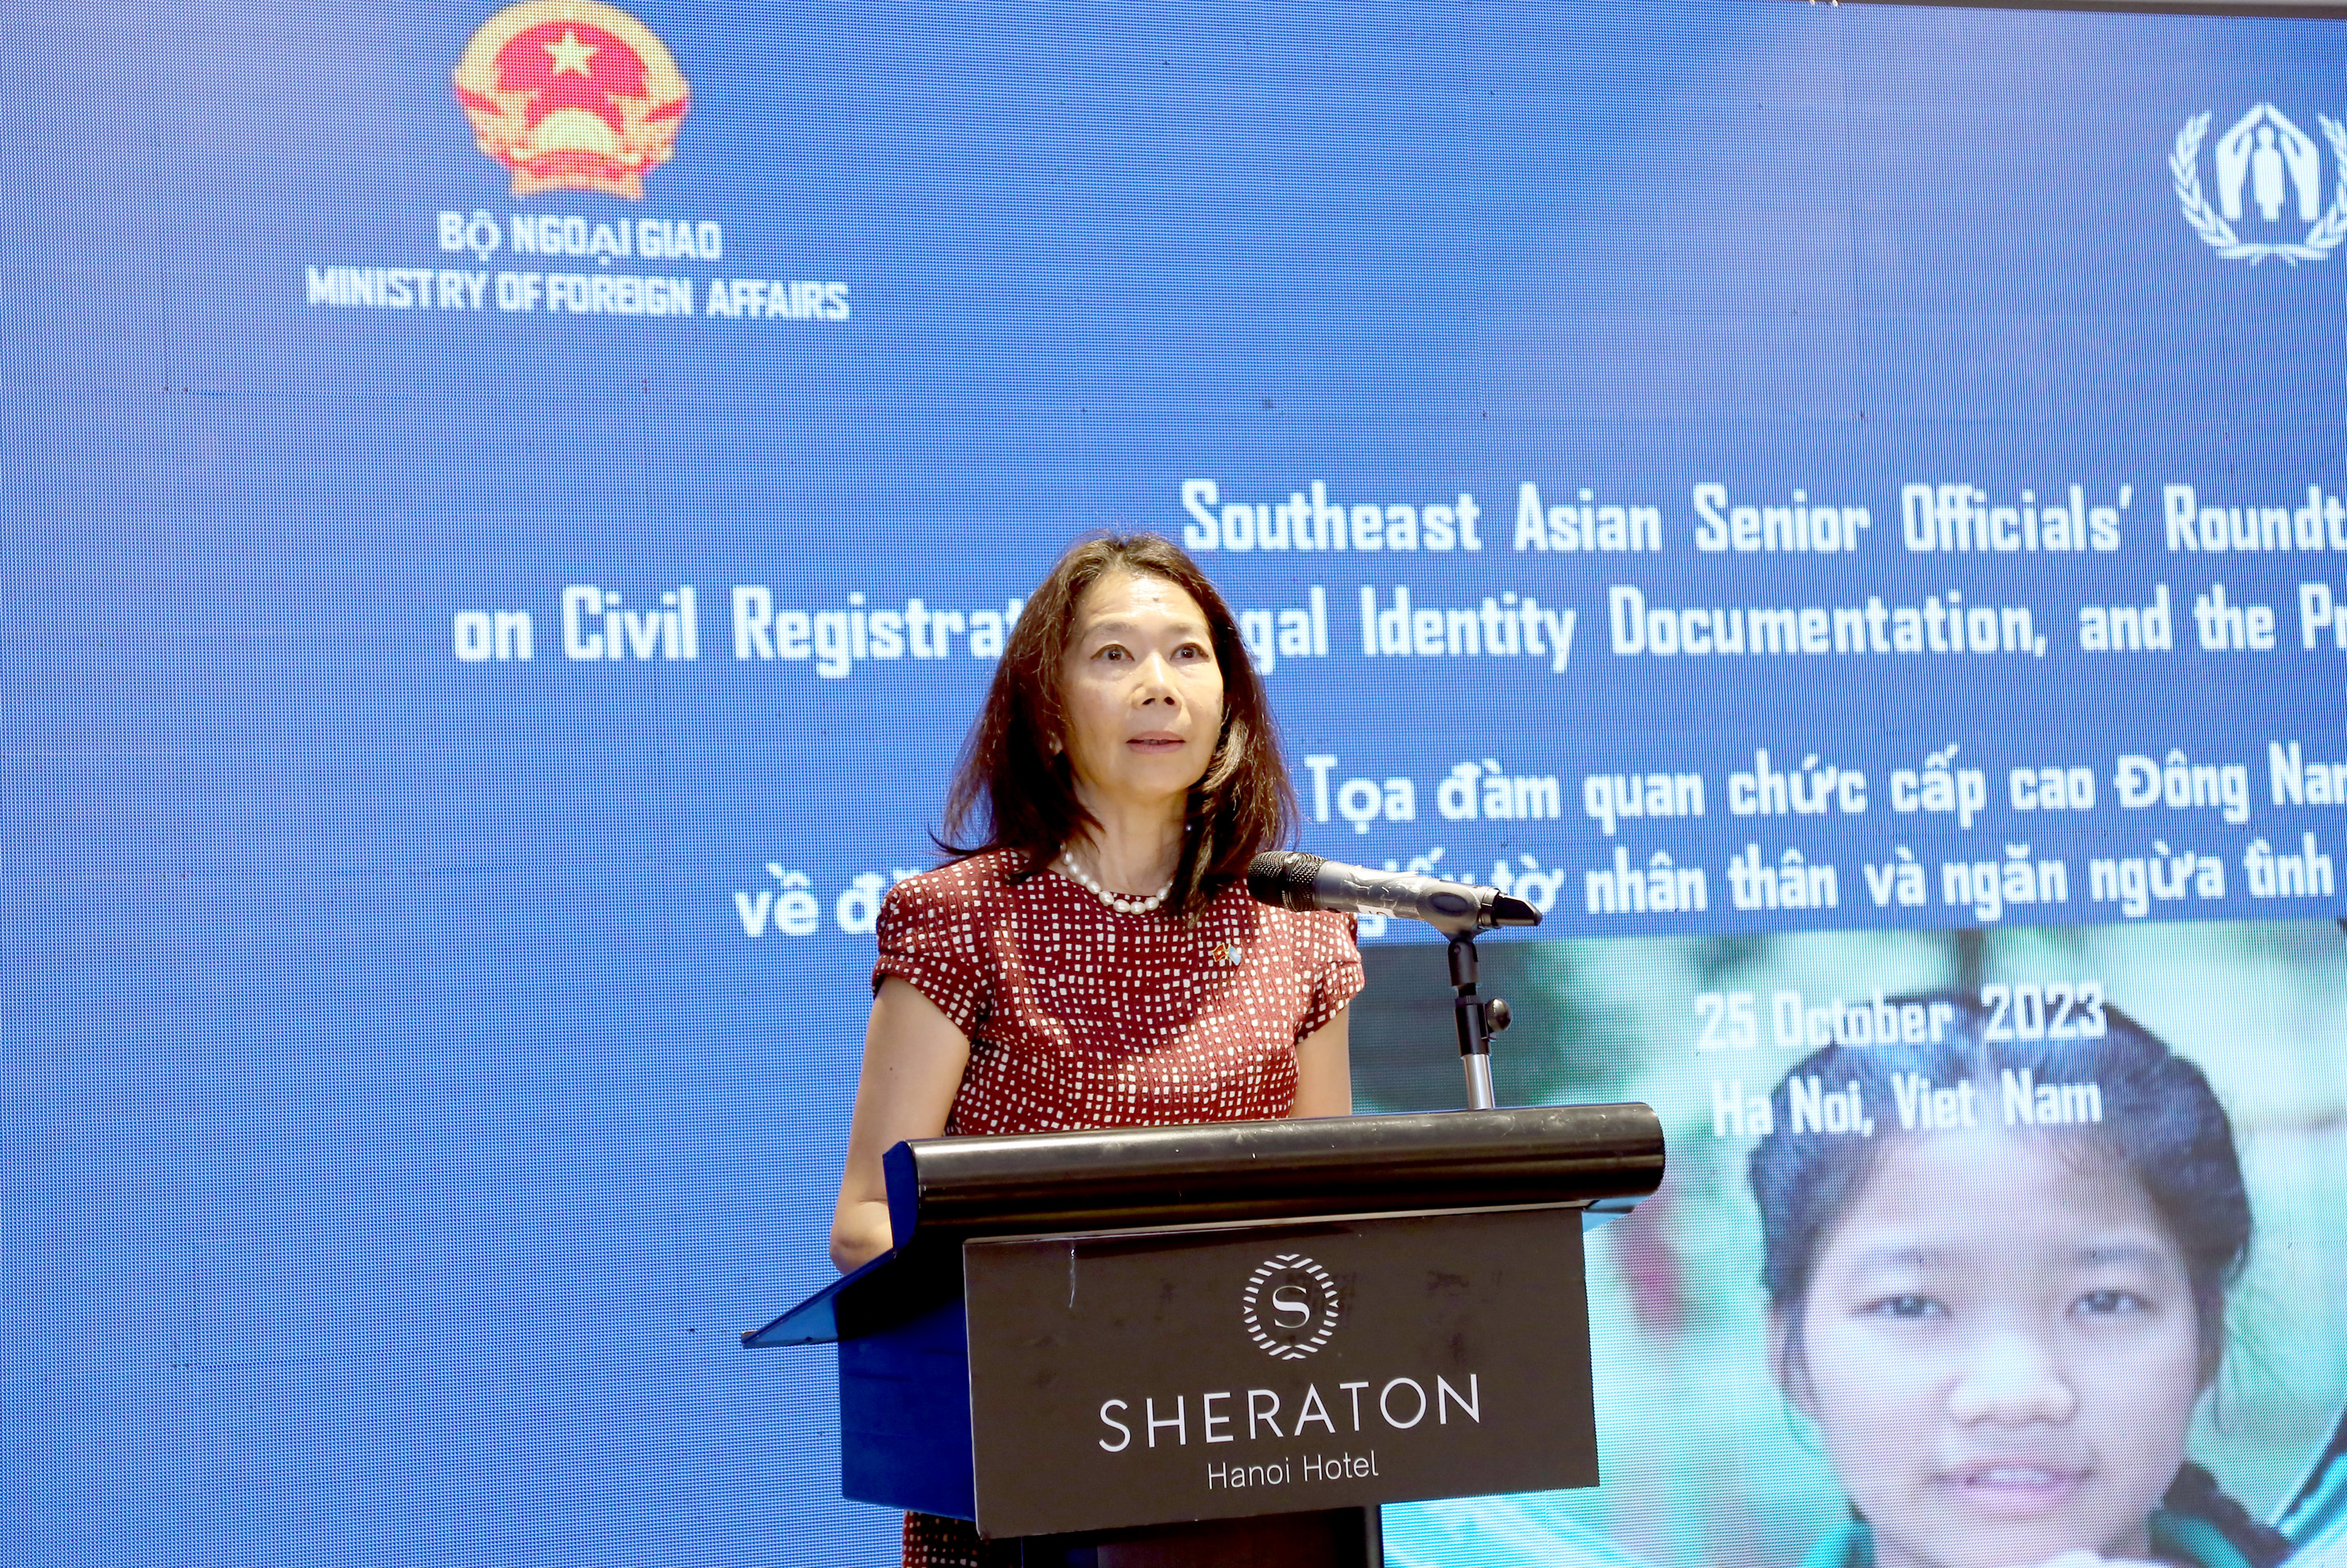 Điều phối viên thường trú của Liên Hợp Quốc tại Việt Nam Pauline Temesis cho rằng cần có hành động bổ sung, tăng tốc và có mục tiêu trong giải quyết tình trạng không quốc tịch ở Đông Nam Á. Ảnh: Thanh Hà